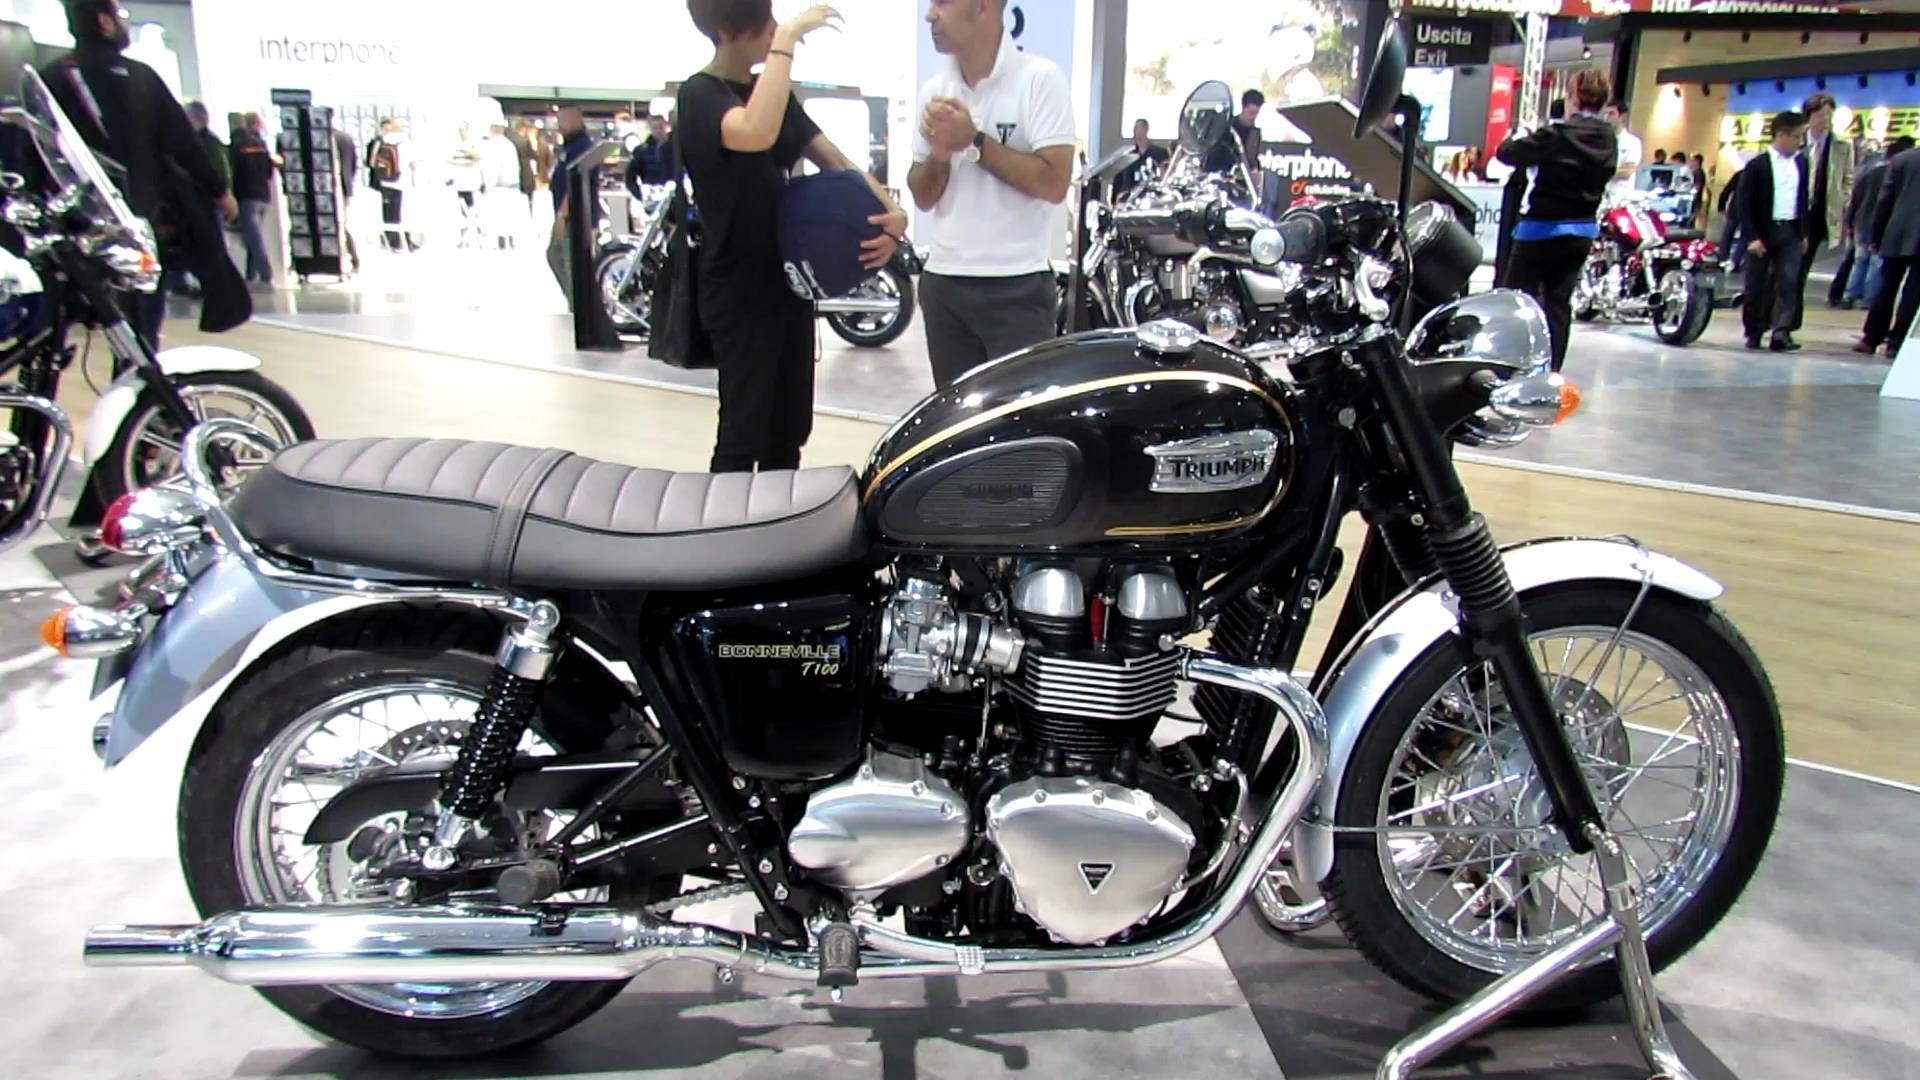 1920x1080 2014 Triumph Bonneville T100 Walkaround - 2013 EICMA Milano Motorcycle  Exhibition - YouTube